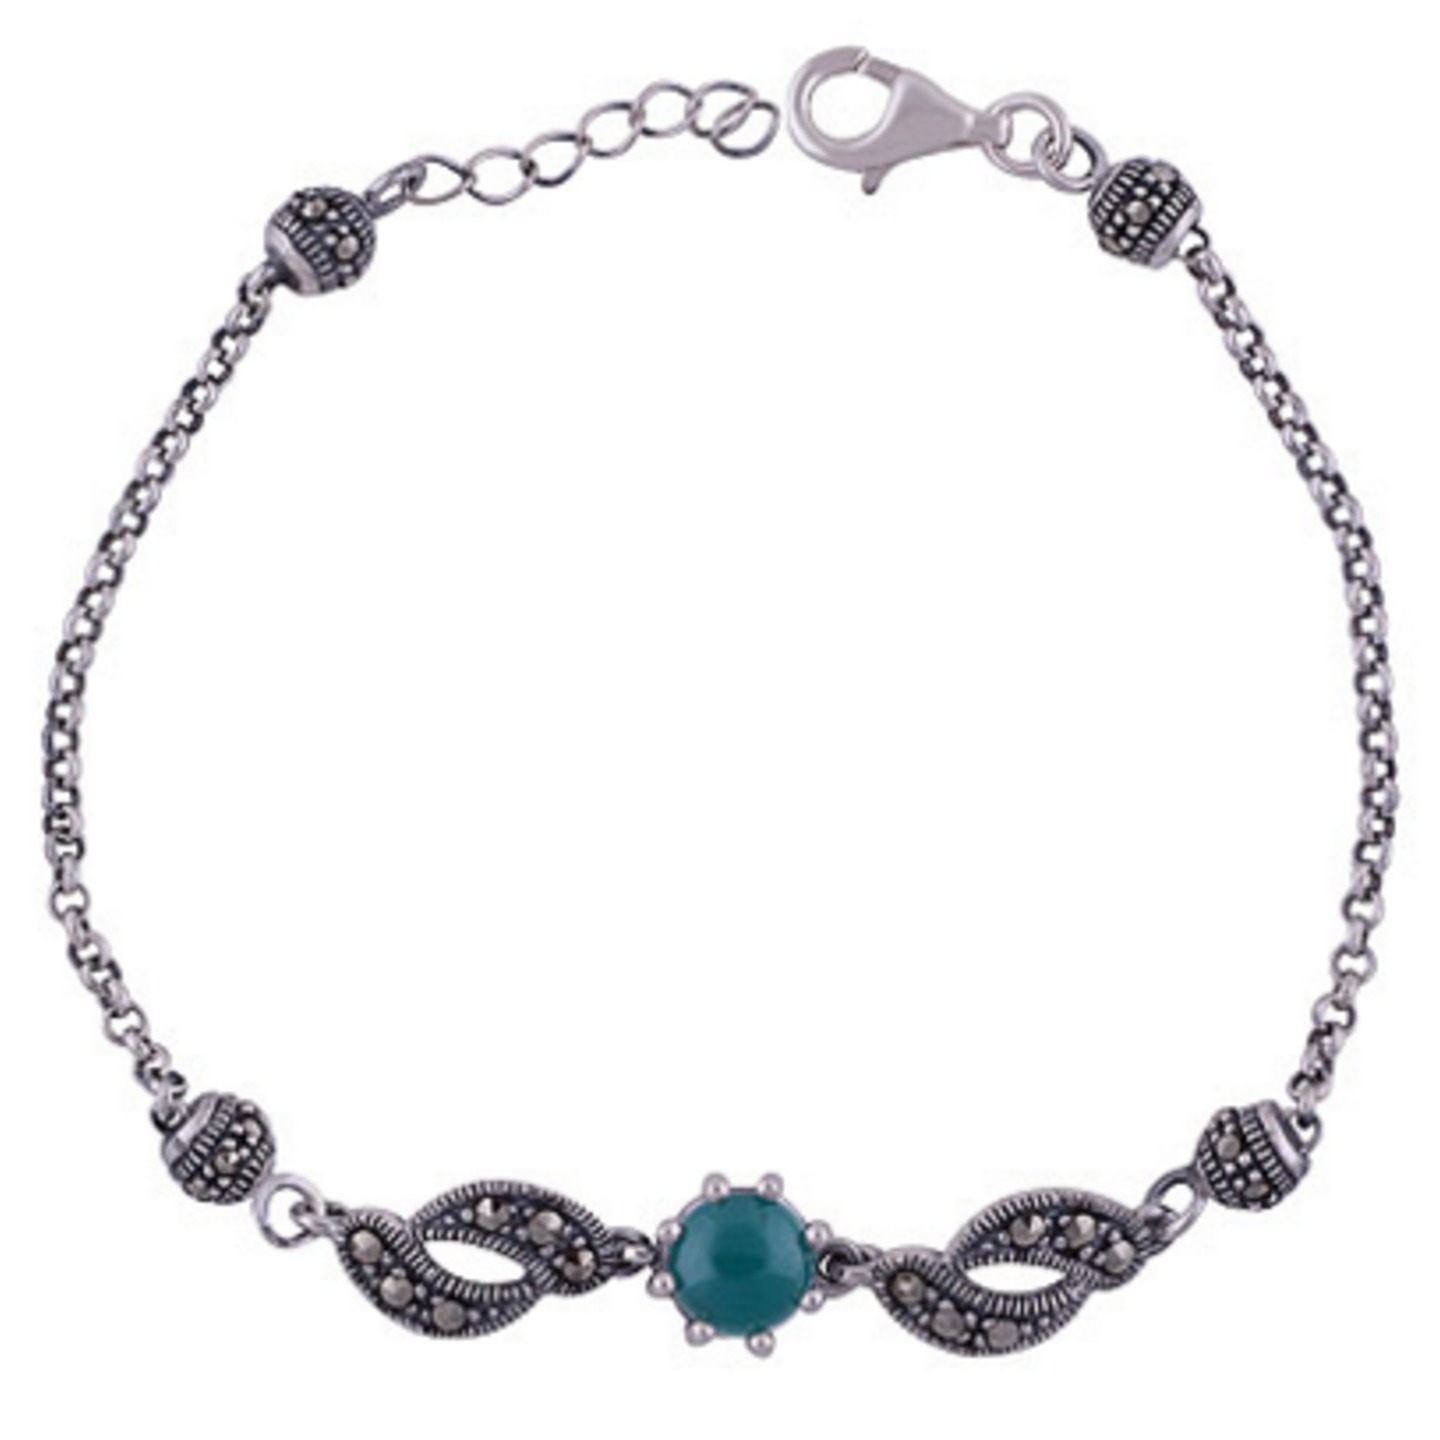 The Onyx Silver Bracelet